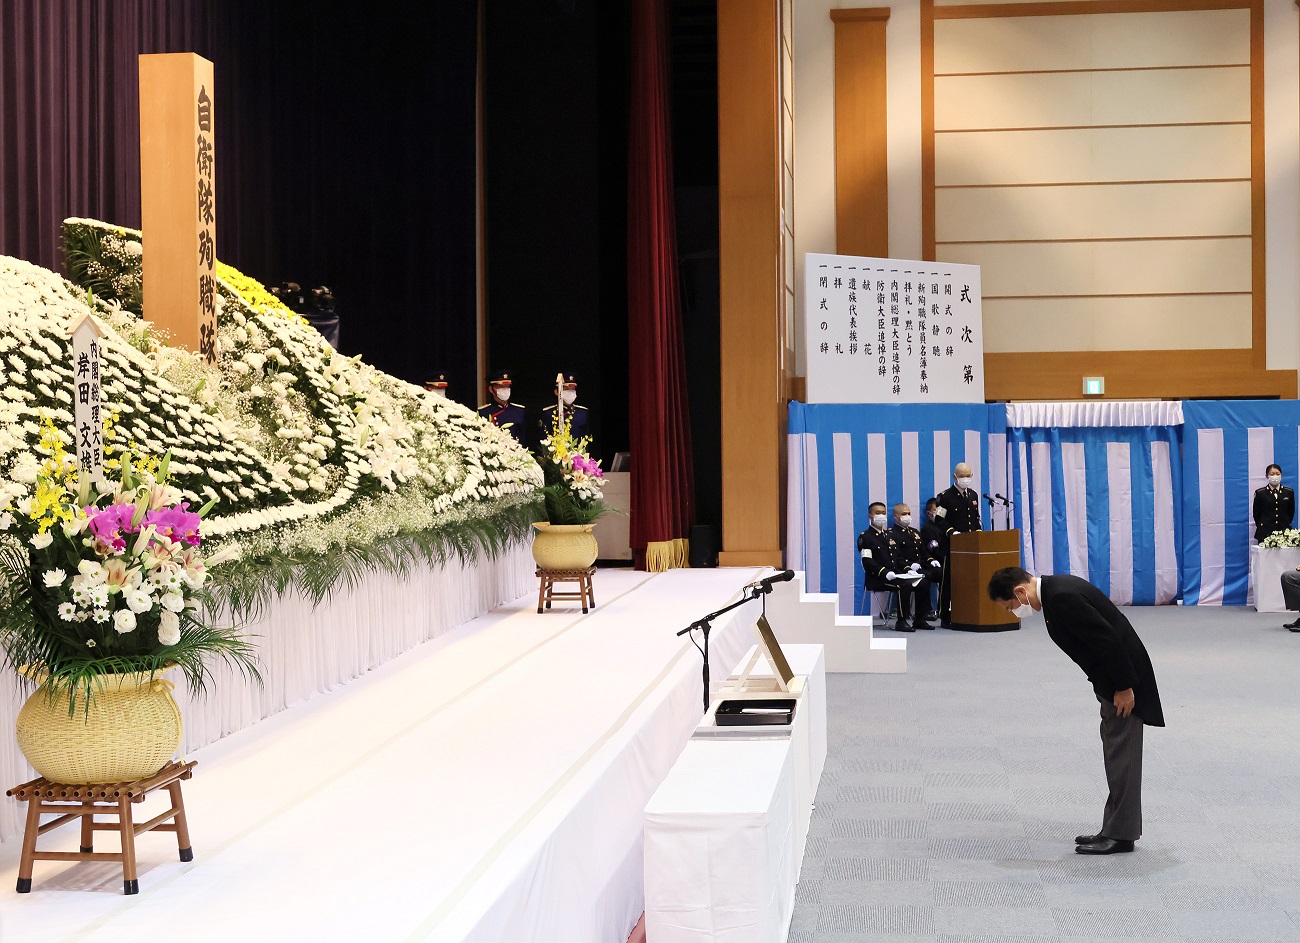 追悼の辞を述べる岸田総理３